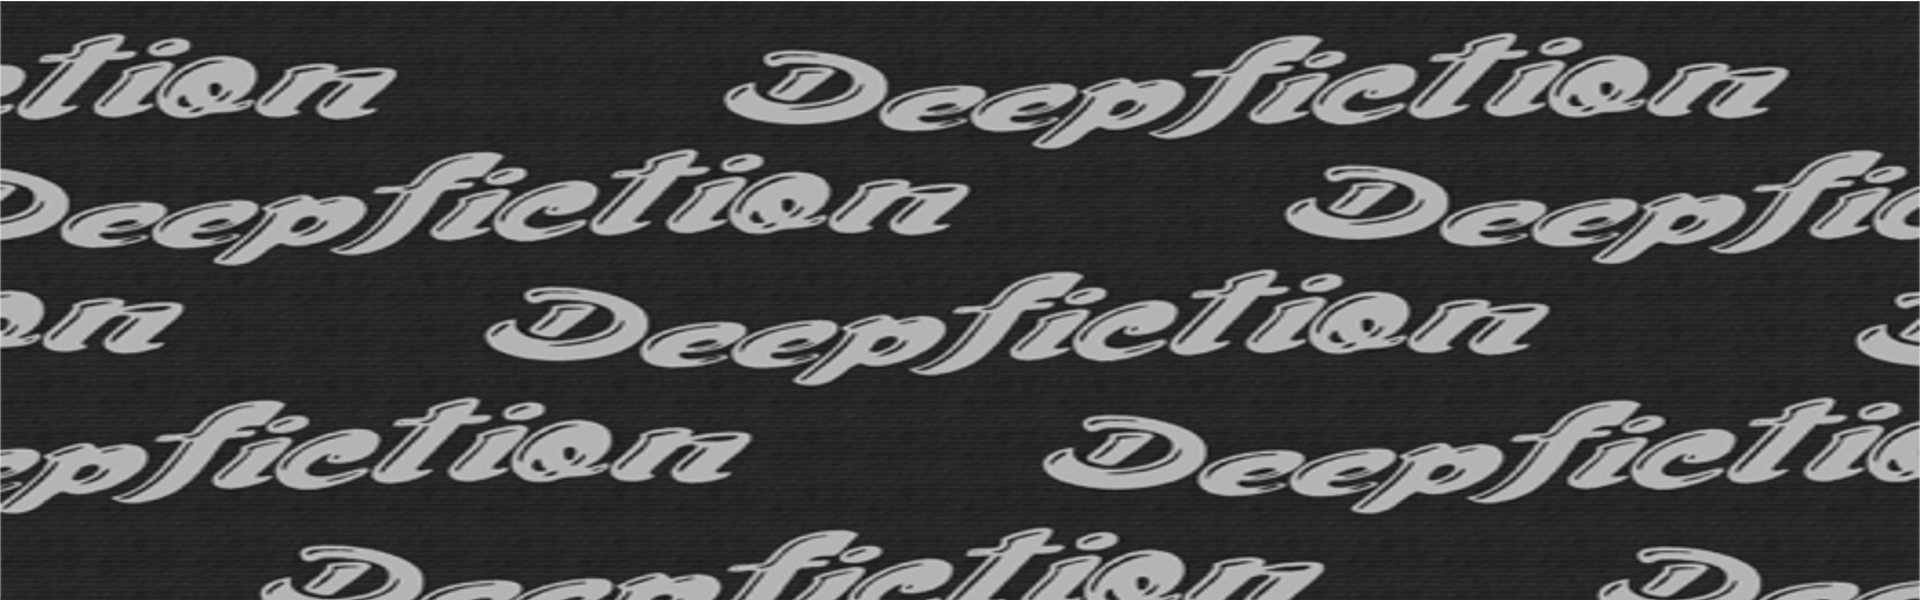 https://www.deepfiction.com/wp-content/uploads/2015/07/full-slider-1920X600-1.jpg